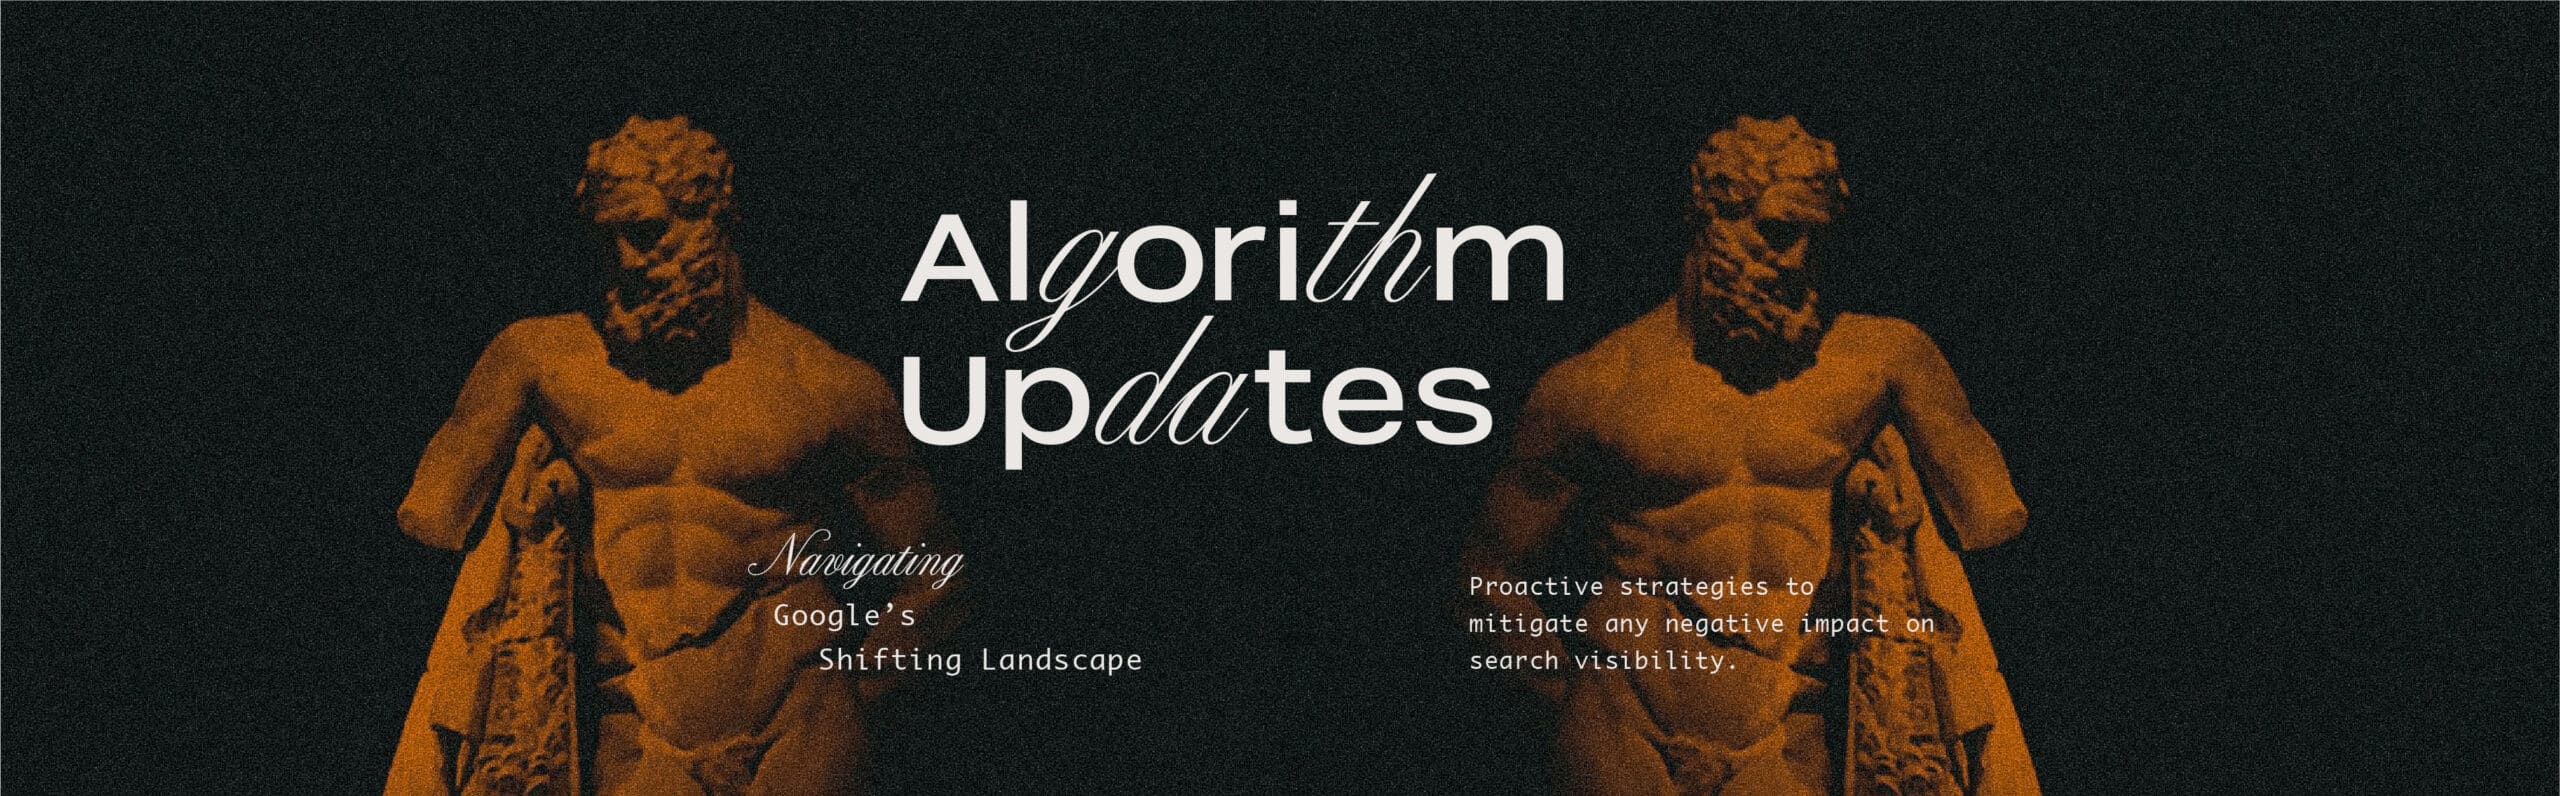 Algorithm Updates: Navigating Google’s Shifting Landscape